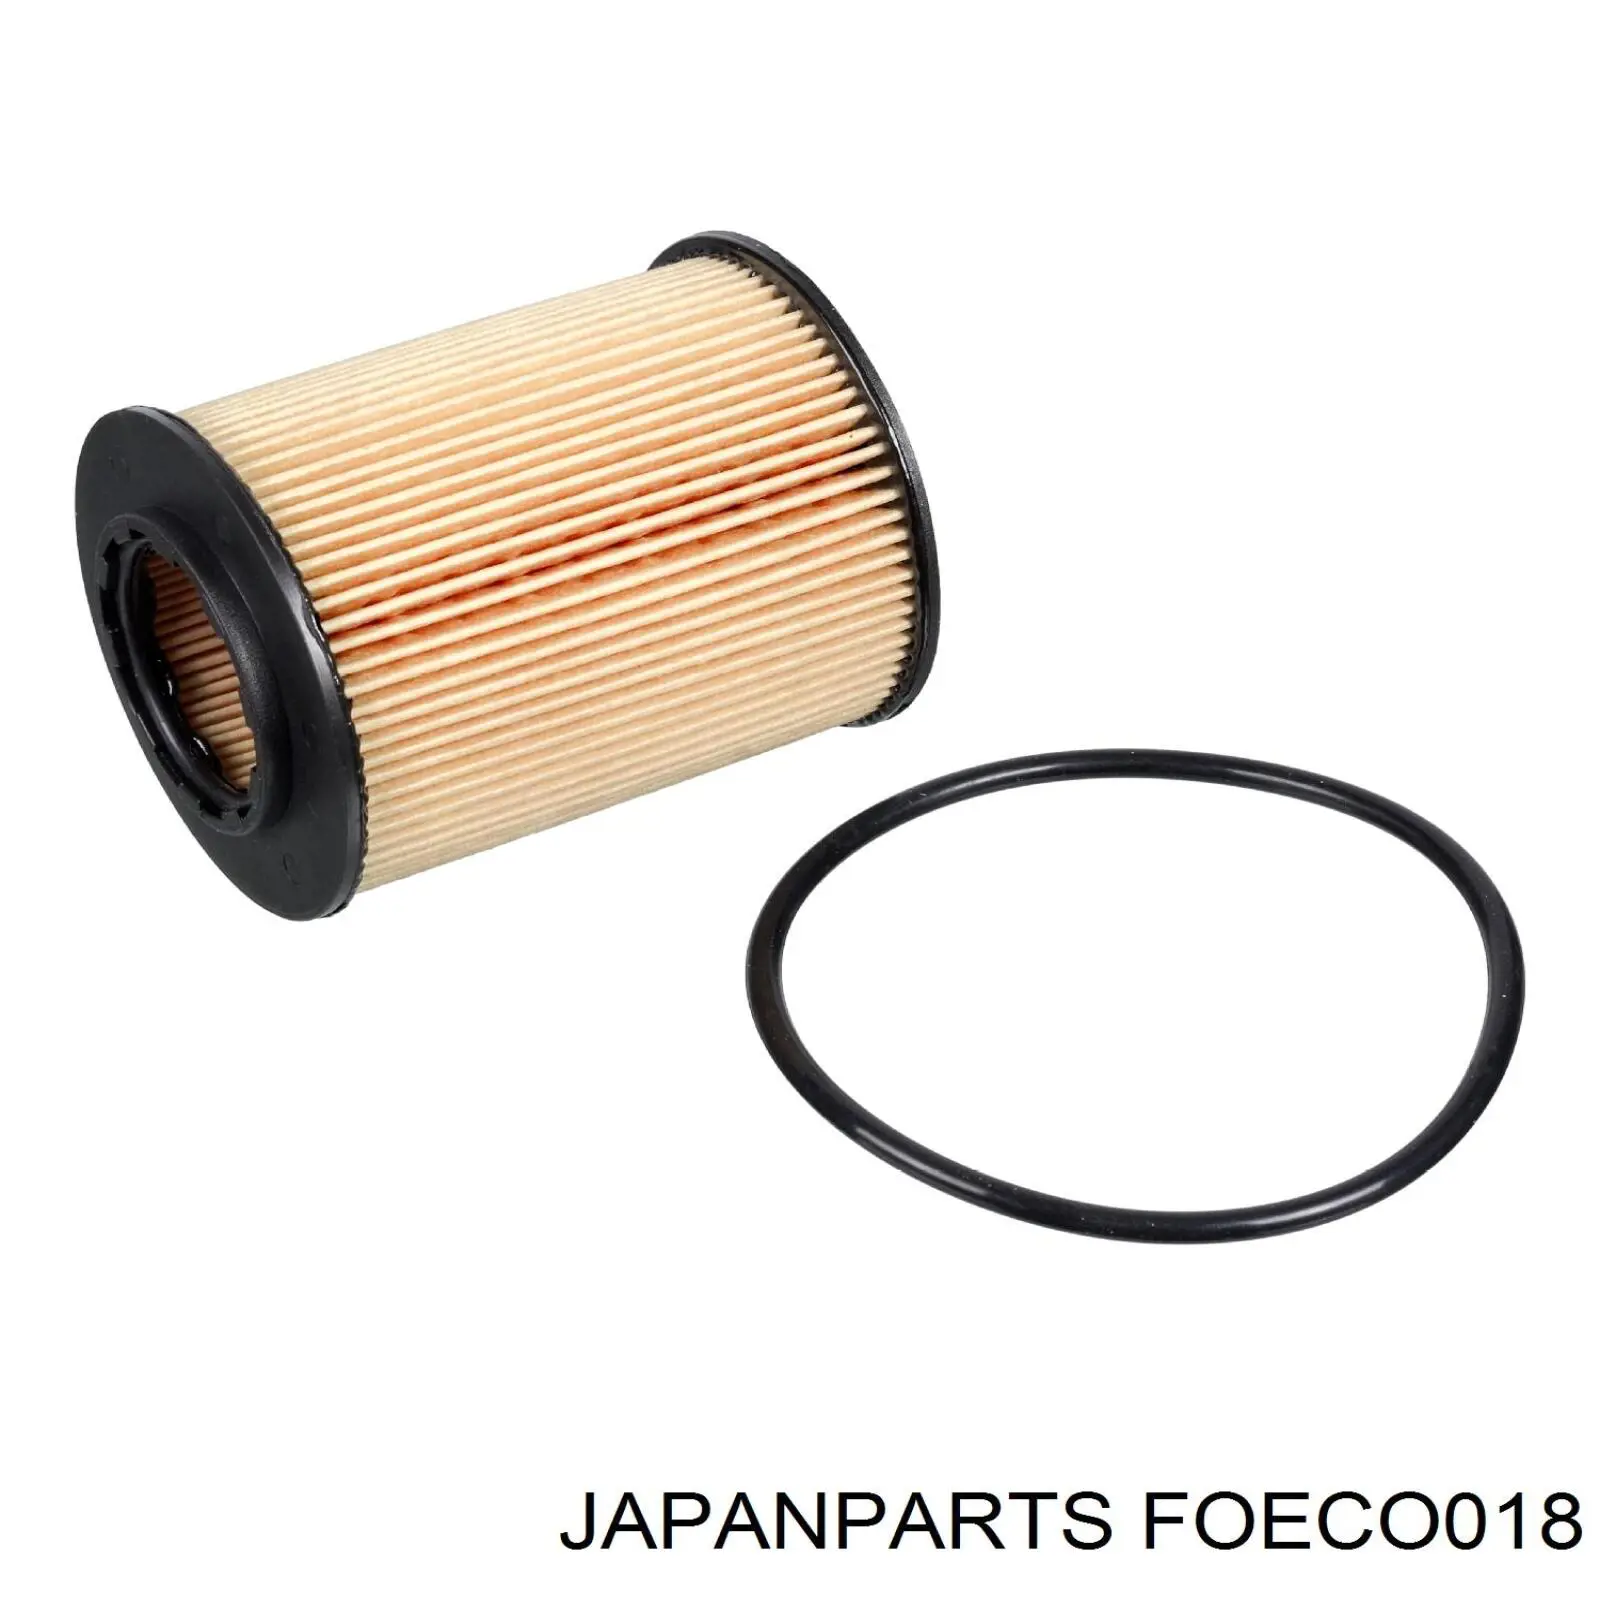 FOECO018 Japan Parts filtro de aceite